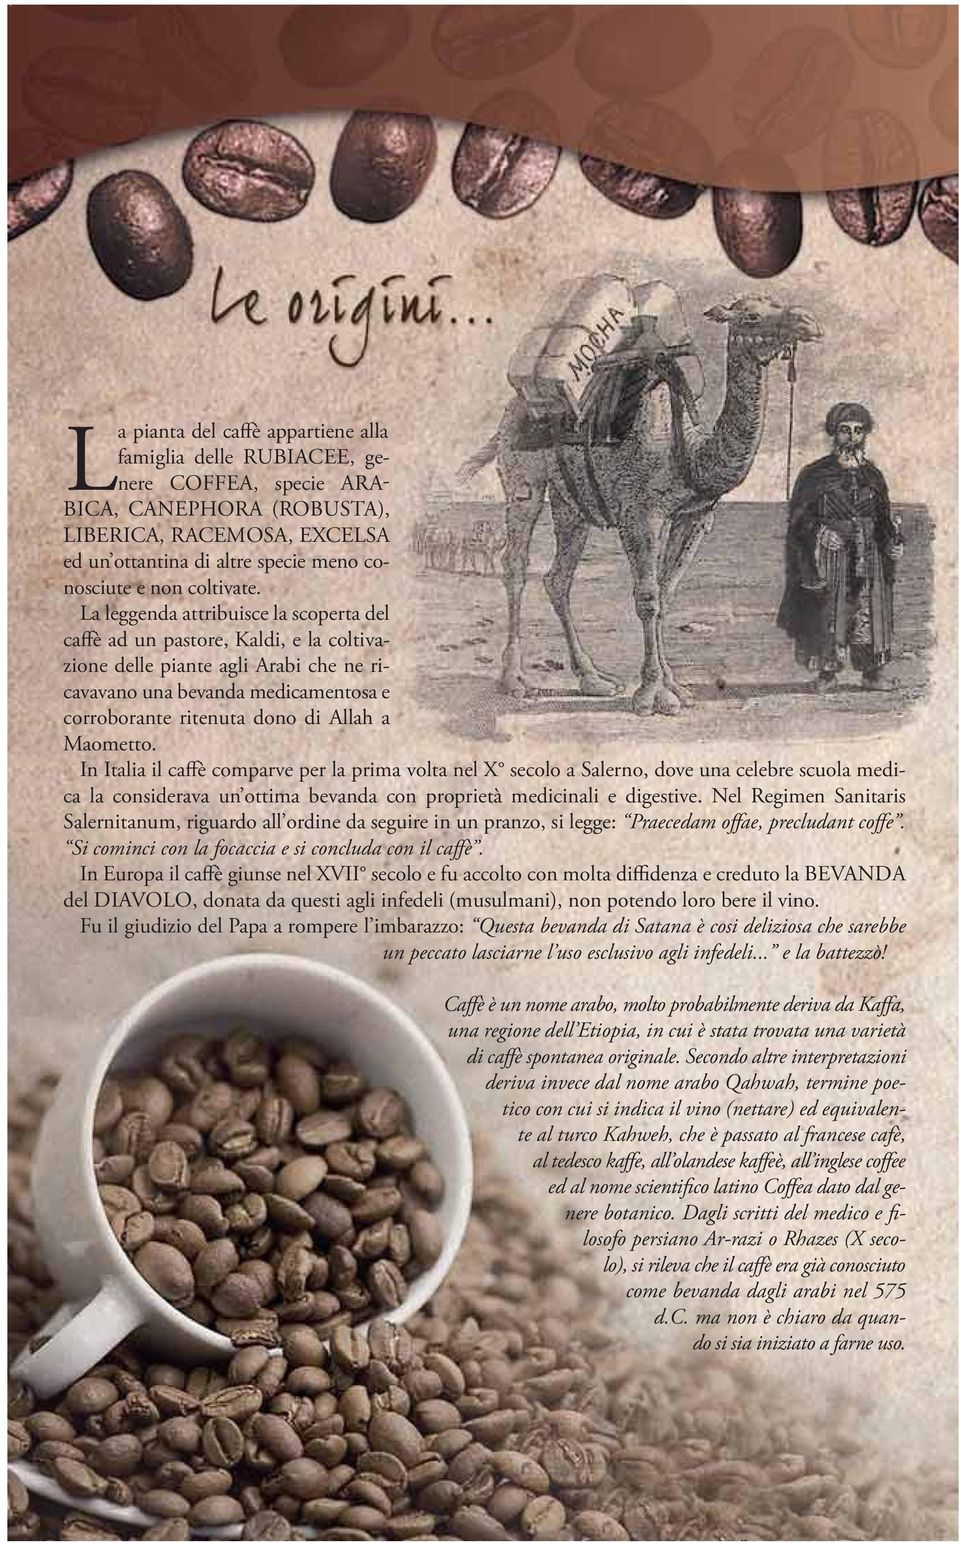 La leggenda attribuisce la scoperta del caffè ad un pastore, Kaldi, e la coltivazione delle piante agli Arabi che ne ricavavano una bevanda medicamentosa e corroborante ritenuta dono di Allah a